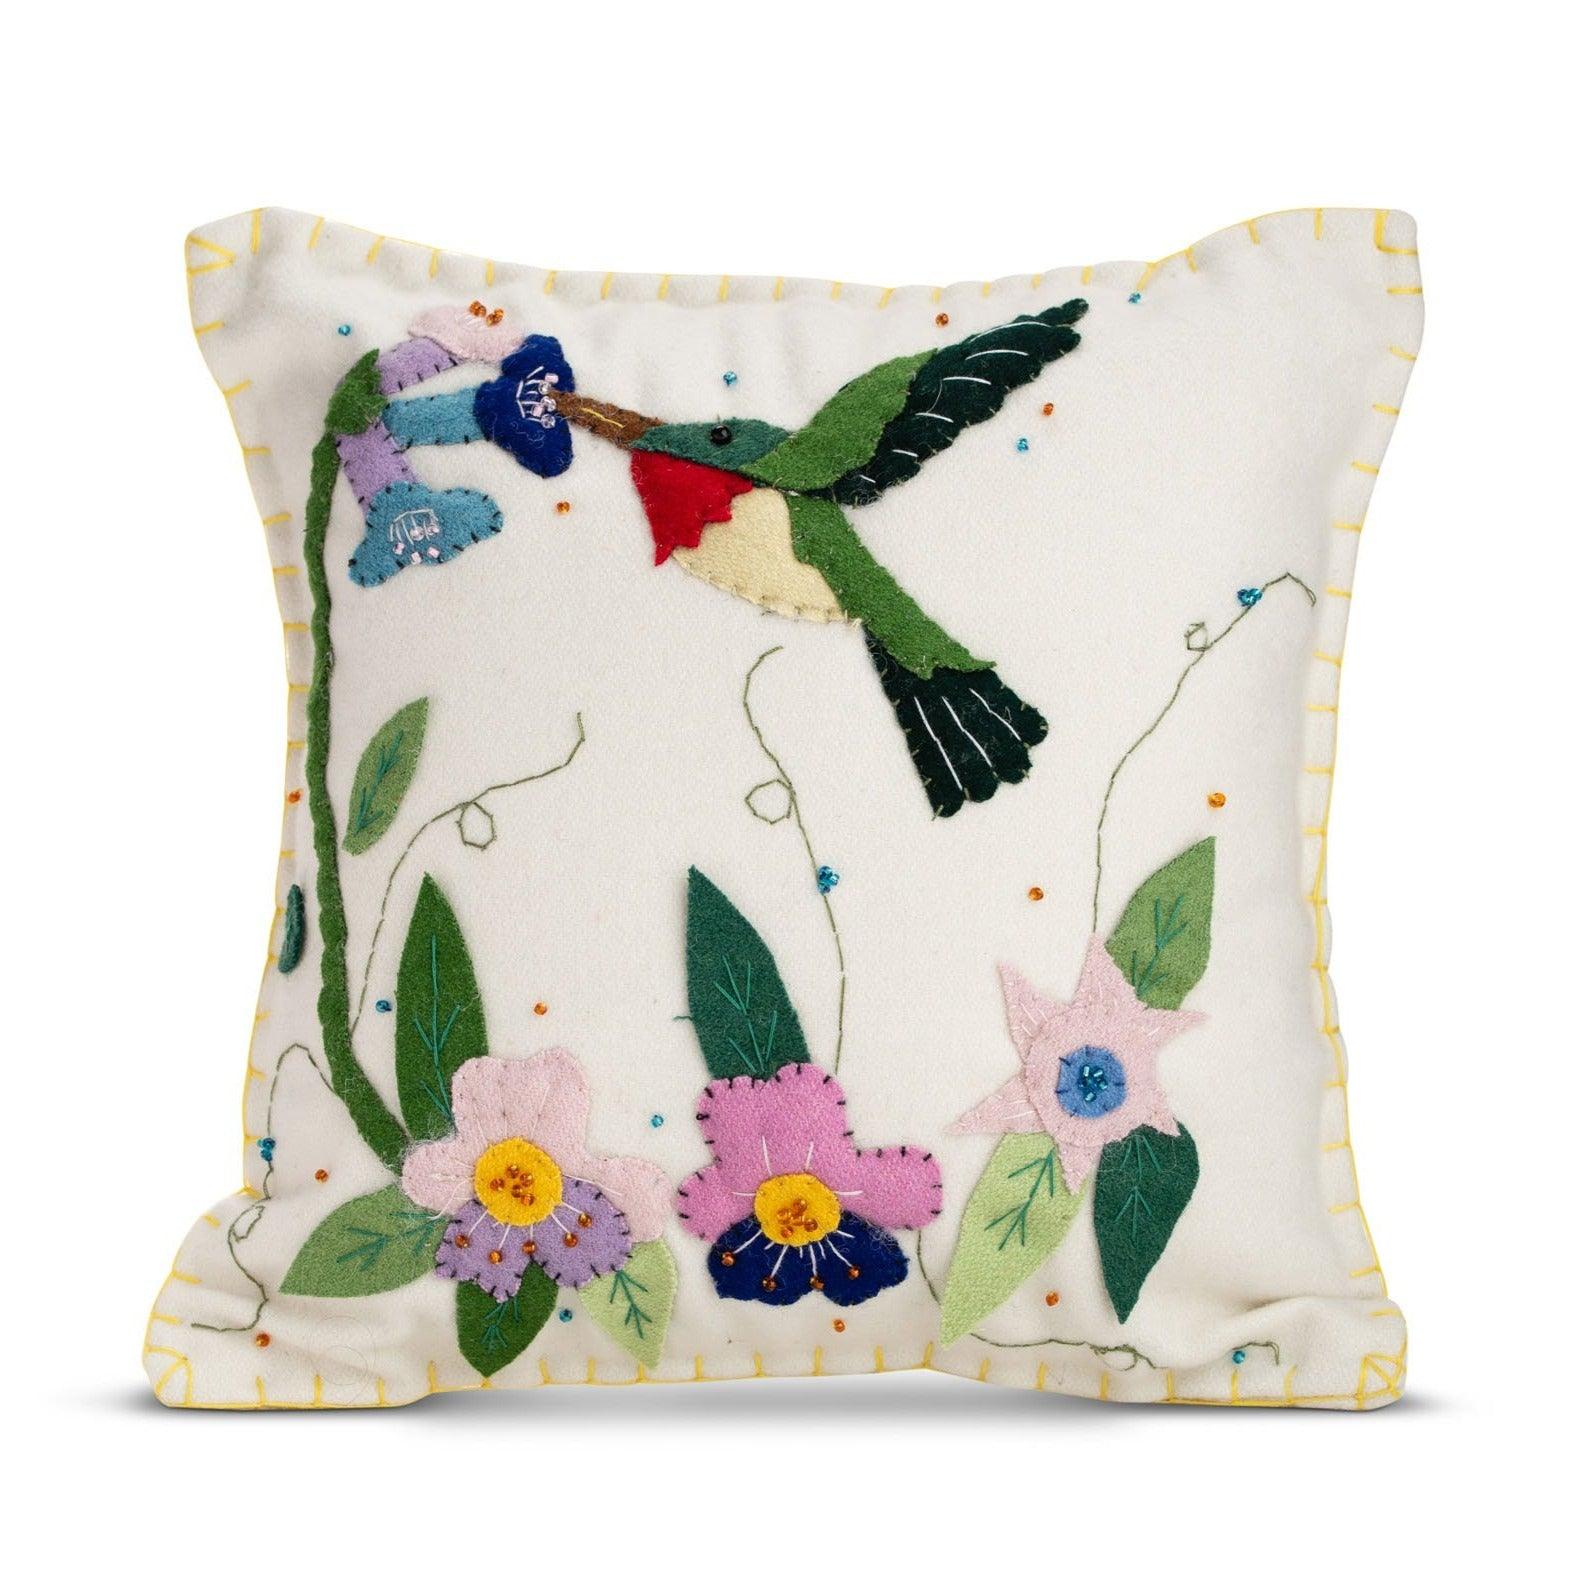 Hummingbird pillow